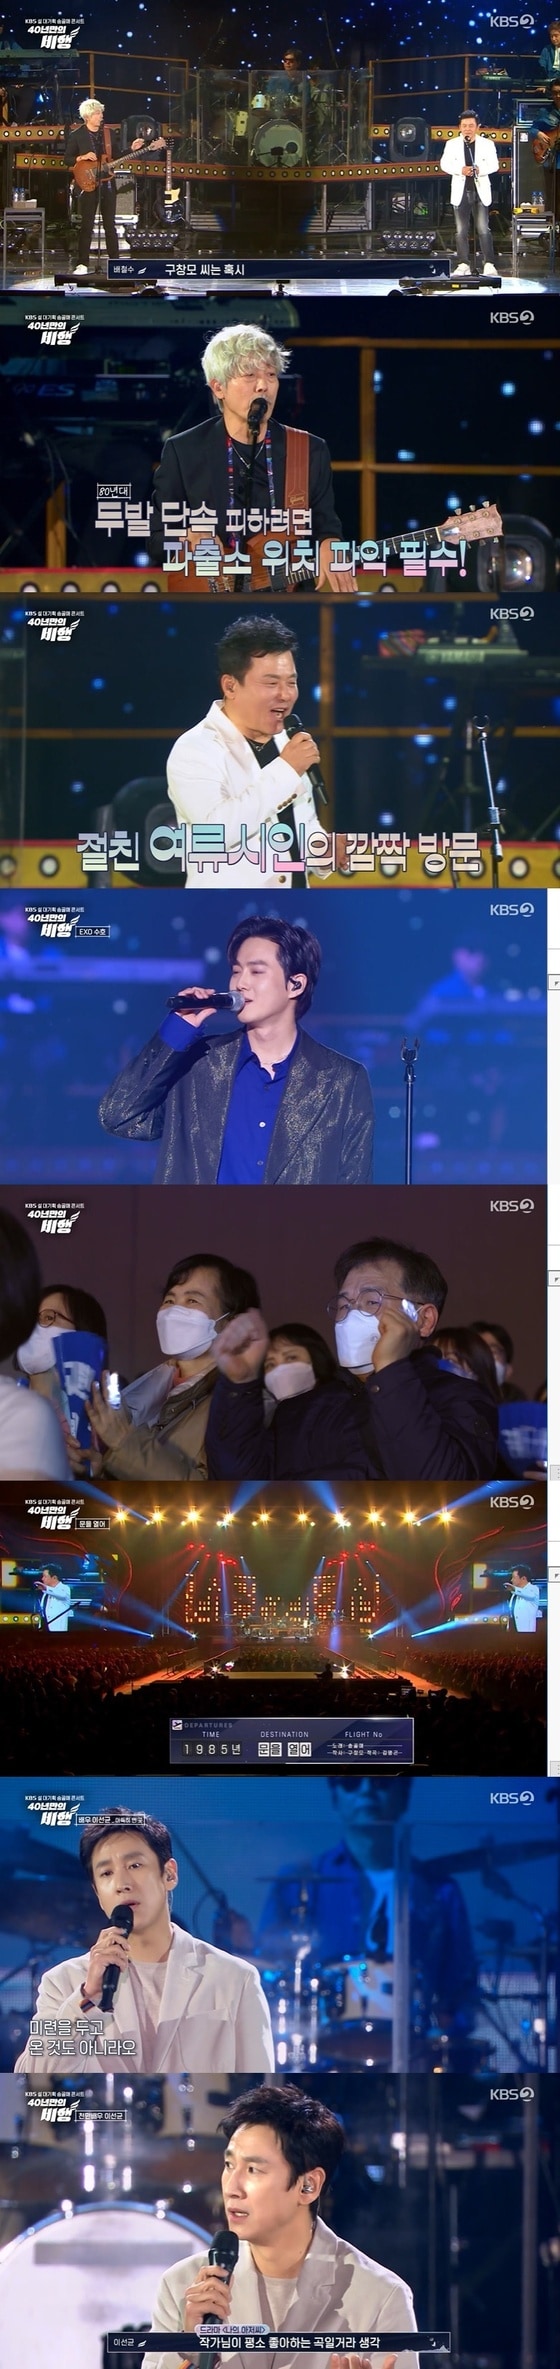 KBS 2TV '송골매 콘서트-40년만의 비행' 방송 화면 캡처